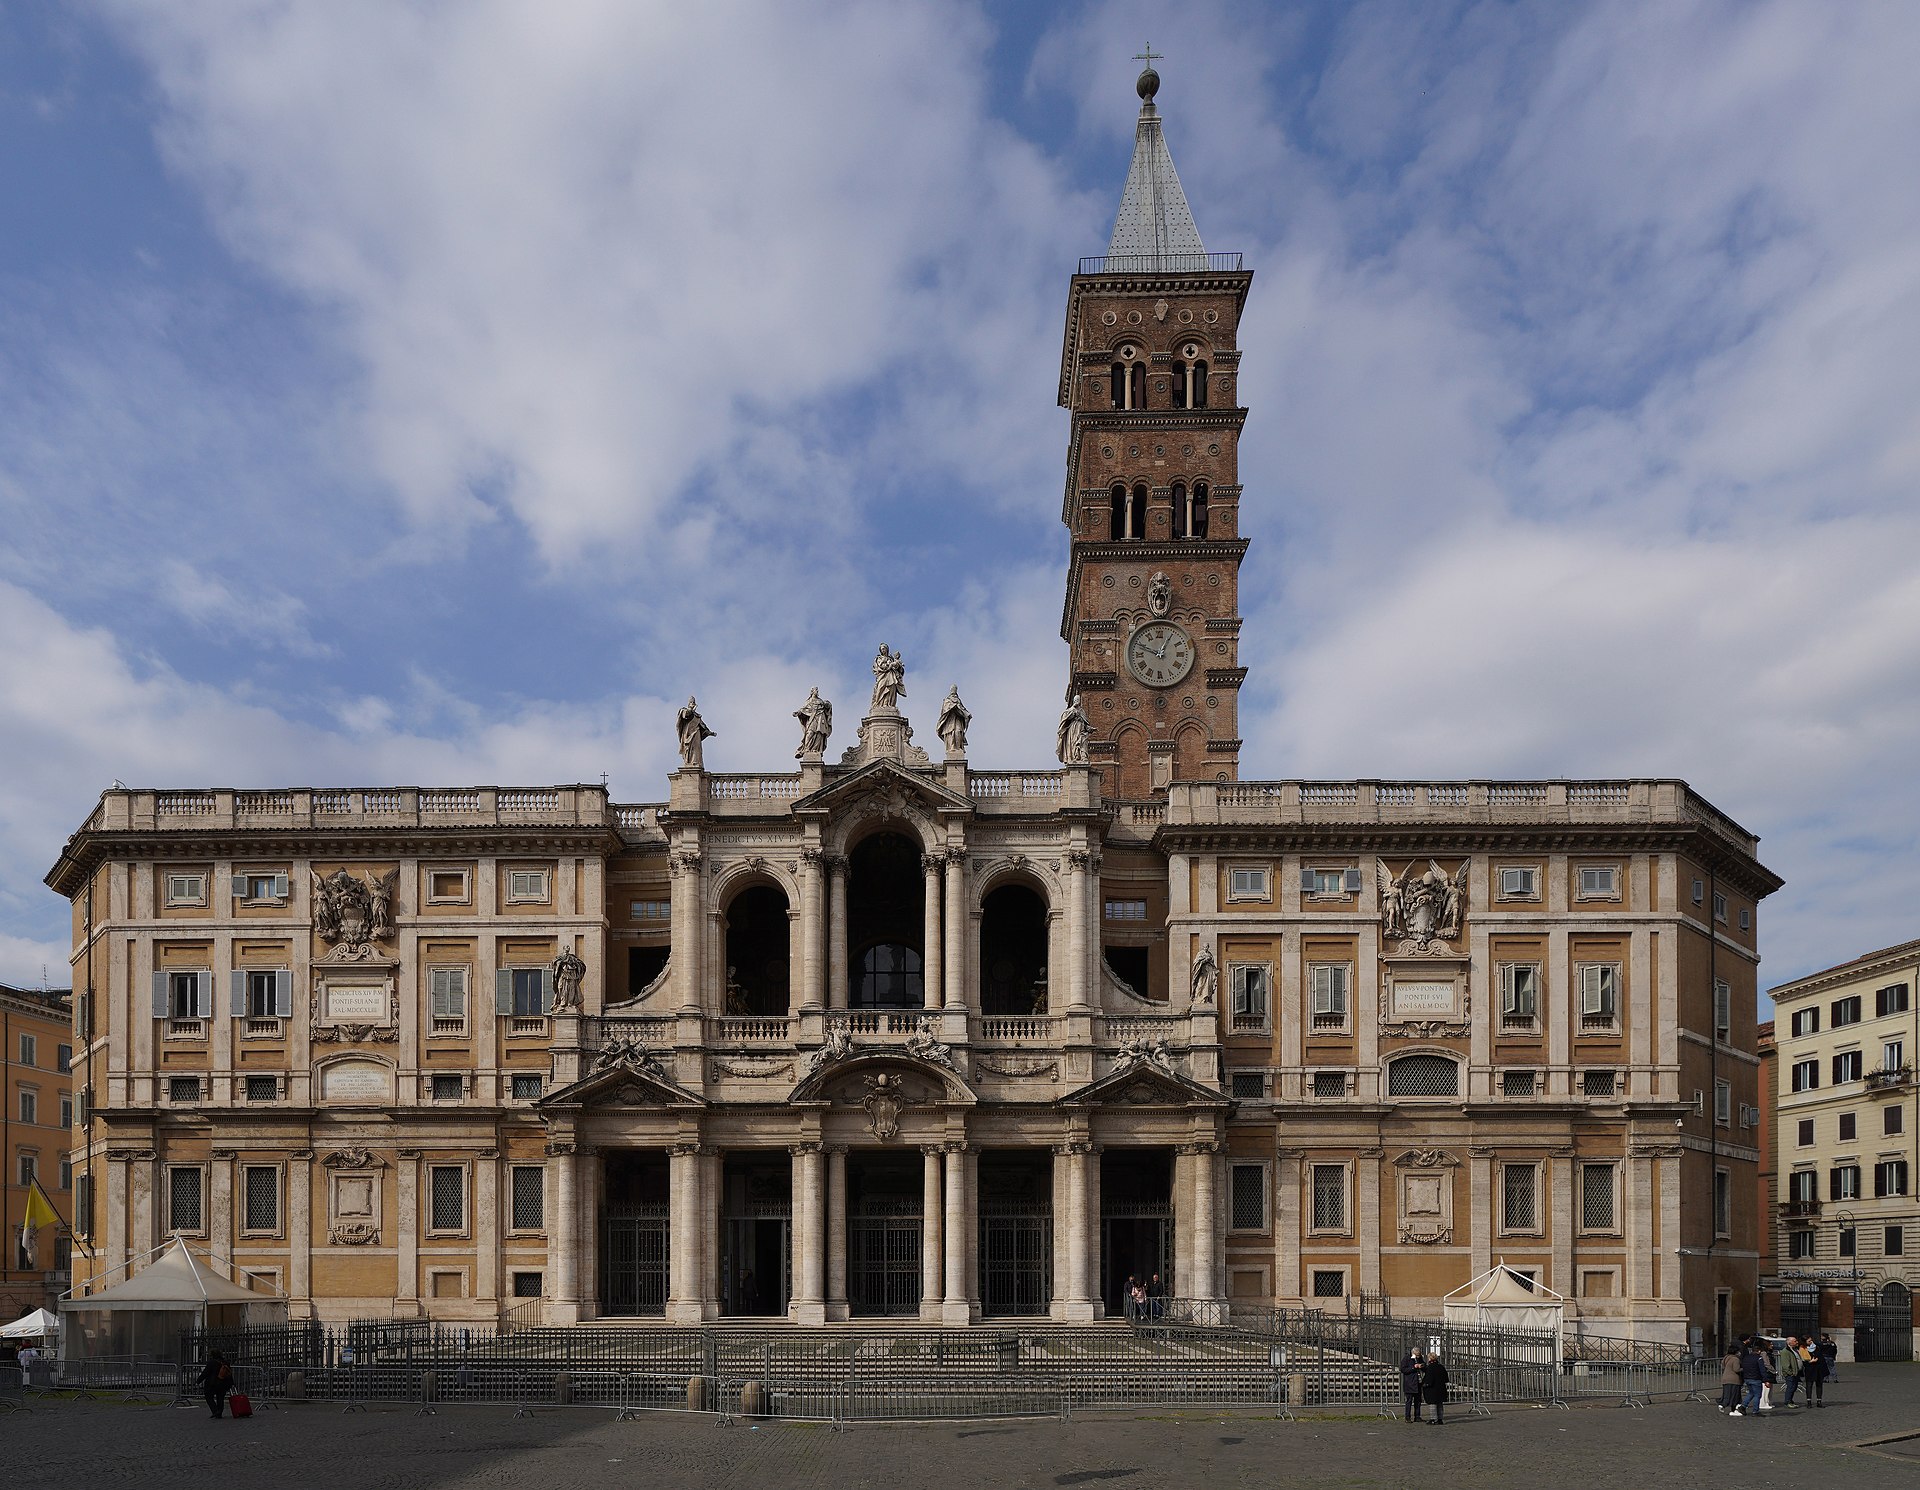 Basilica di Santa Maria Maggiore (NikonZ7II, CC BY-SA 4.0, via Wikimedia Commons)